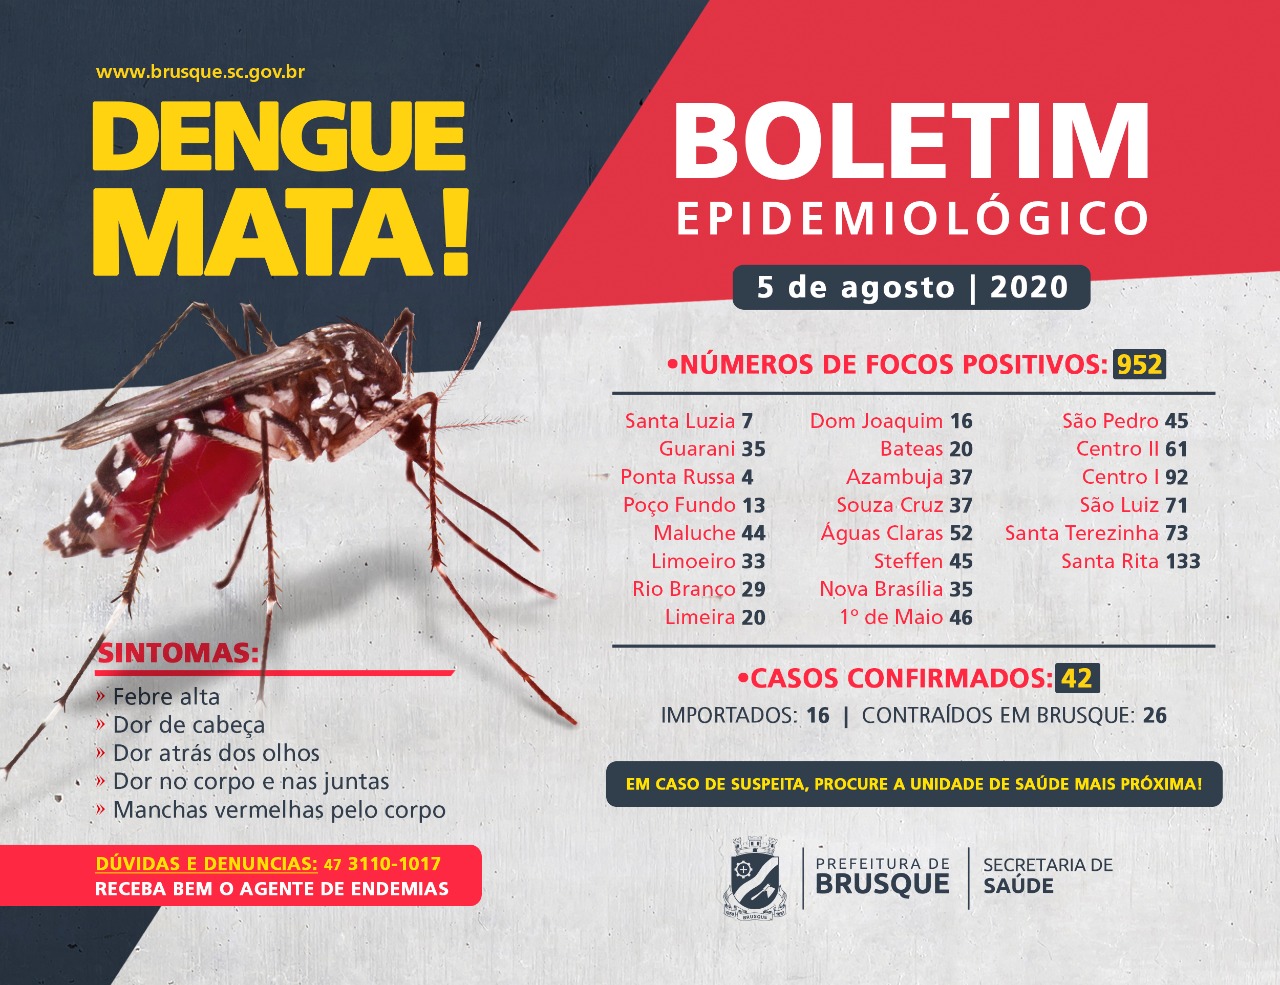 Confira o boletim epidemiológico da dengue desta quarta-feira (5)